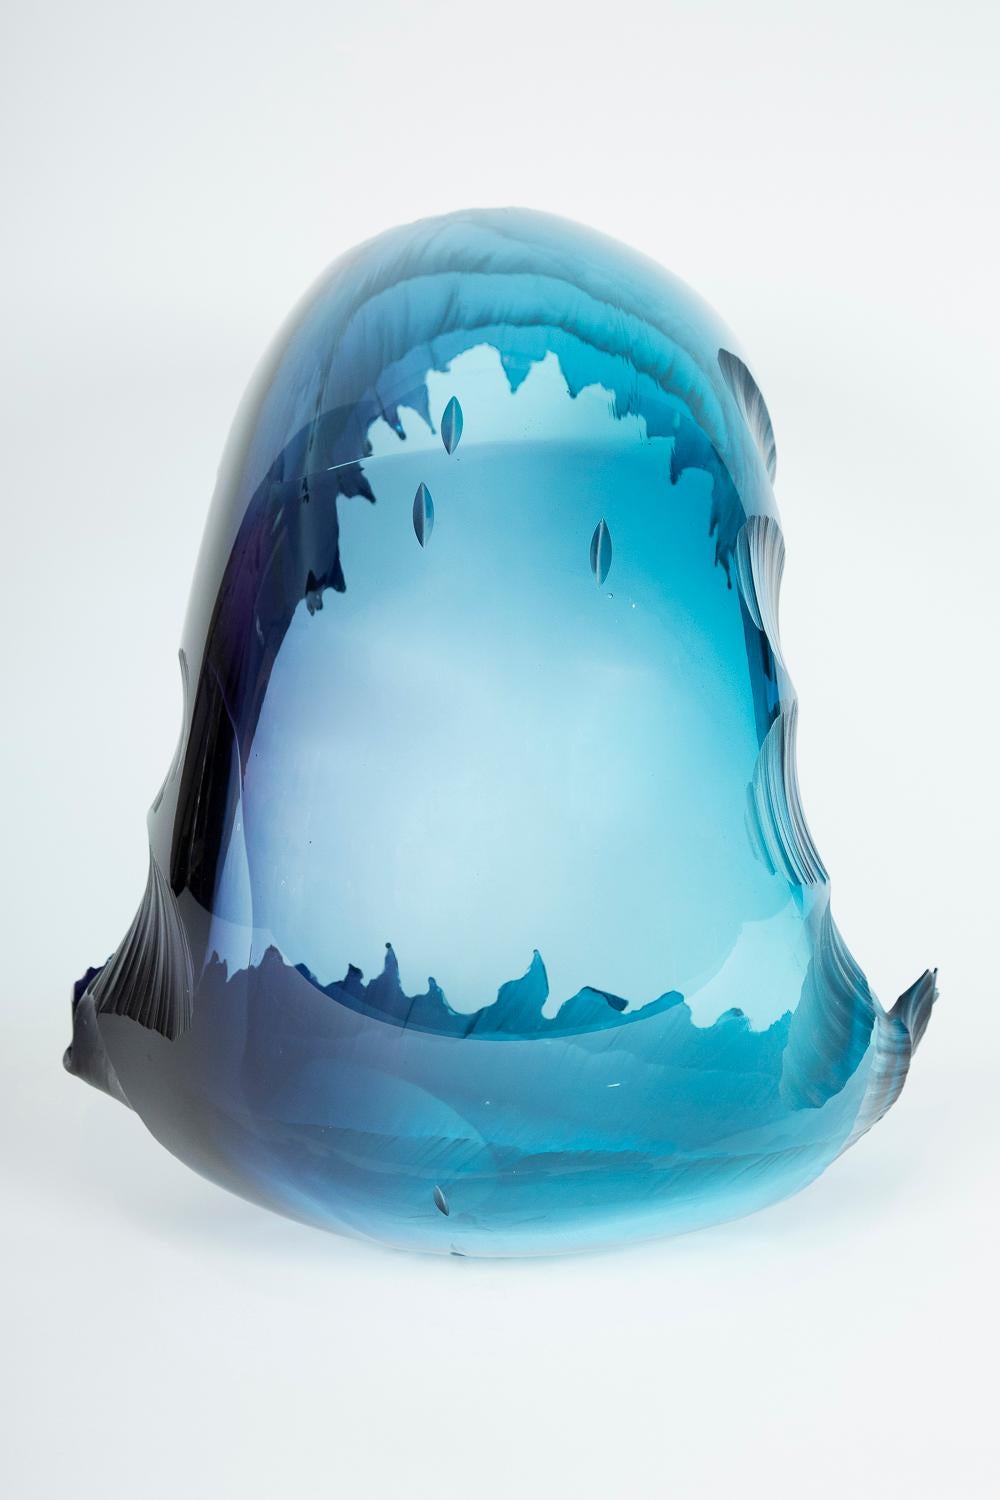 Uist Evening Storm glass sculpture by Graham Muir 1